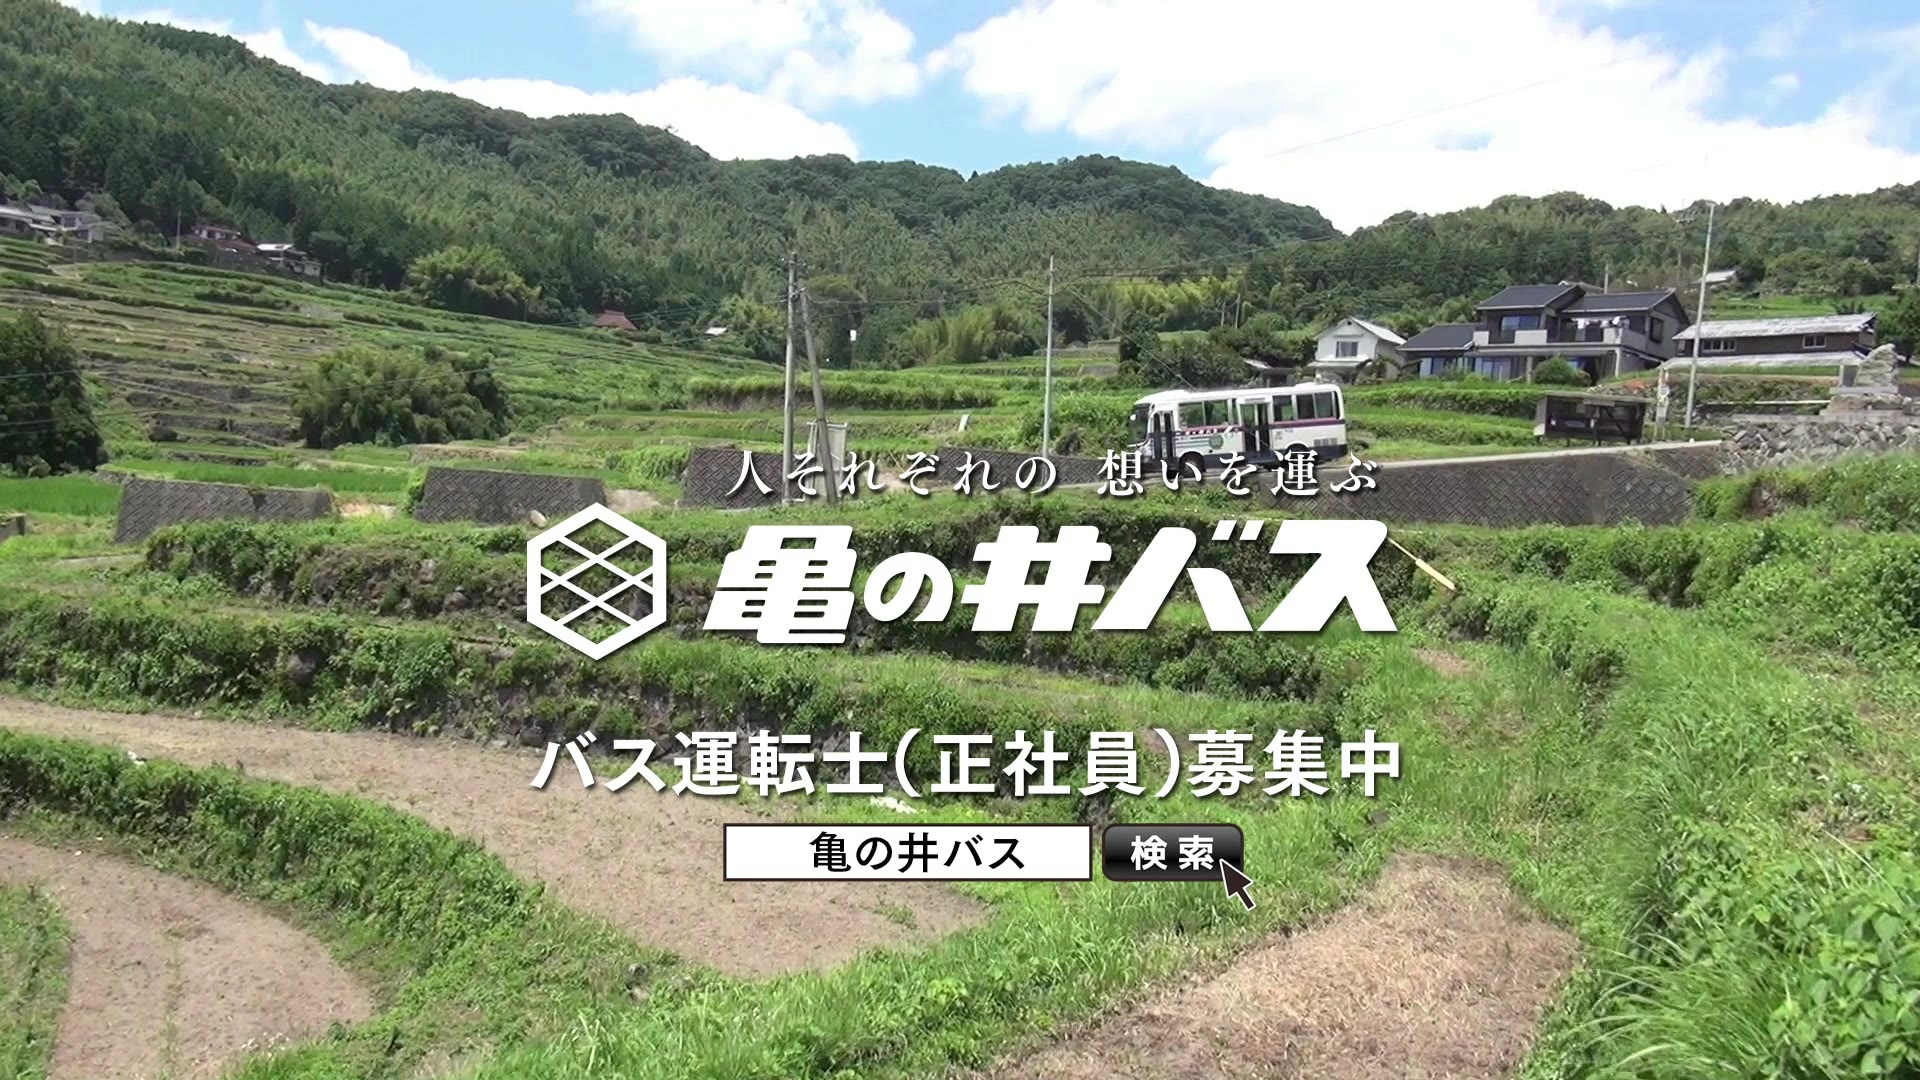 亀の井バス TV-CM「少年の憧れ」篇のイメージ